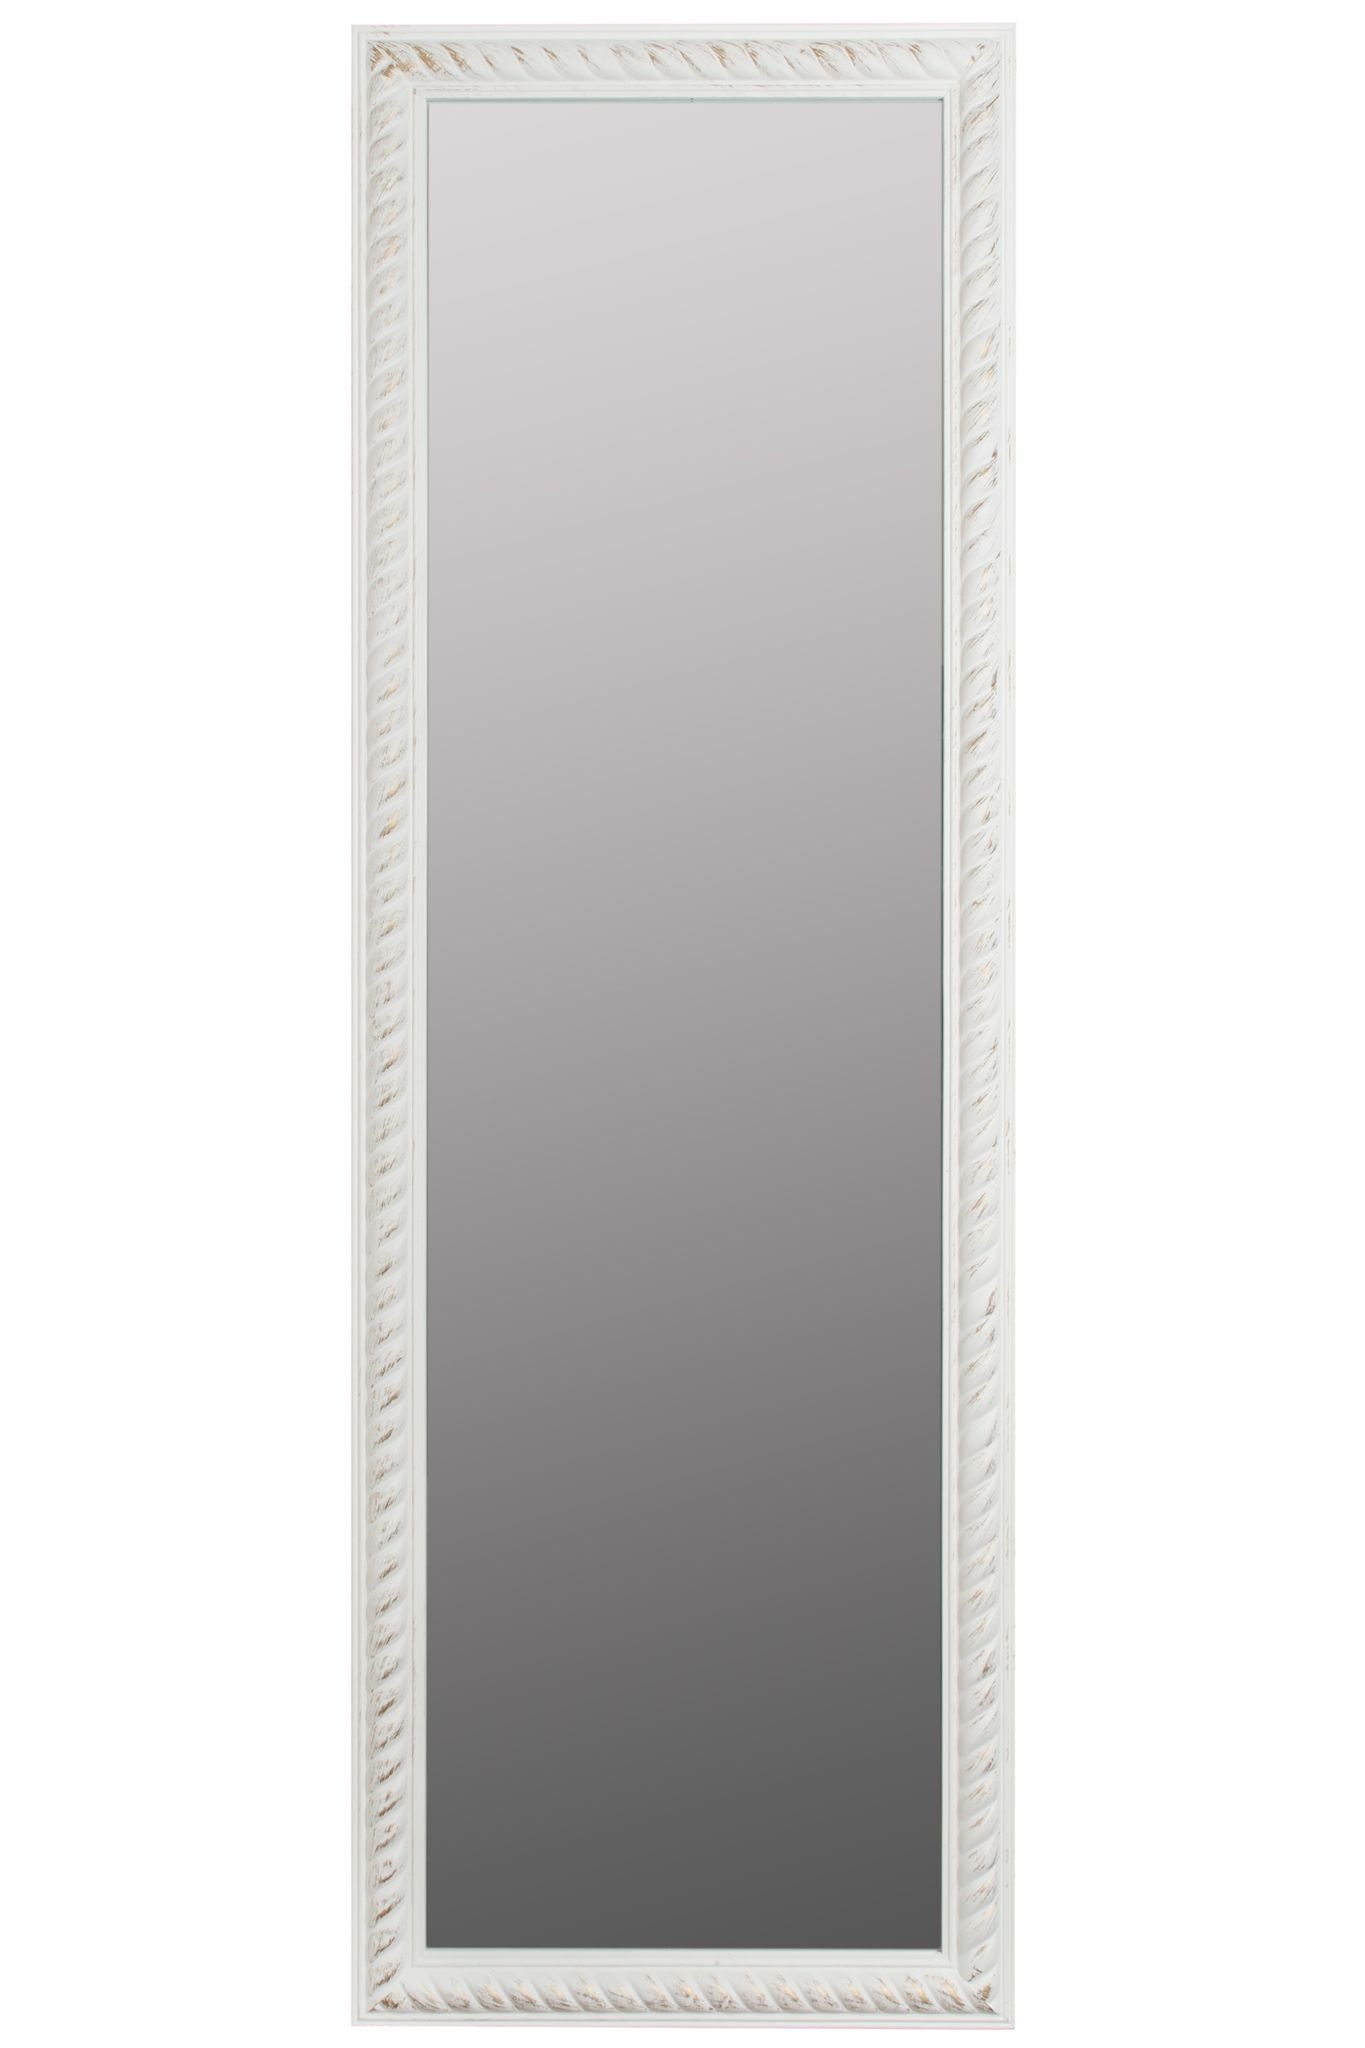 Spiegel weiß 62x187x7 Wandspiegel: antik Badezimmerspiegel, Kordelrahmen | holz elbmöbel weiß Wandspiegel vintage cm Wandspiegel weiß